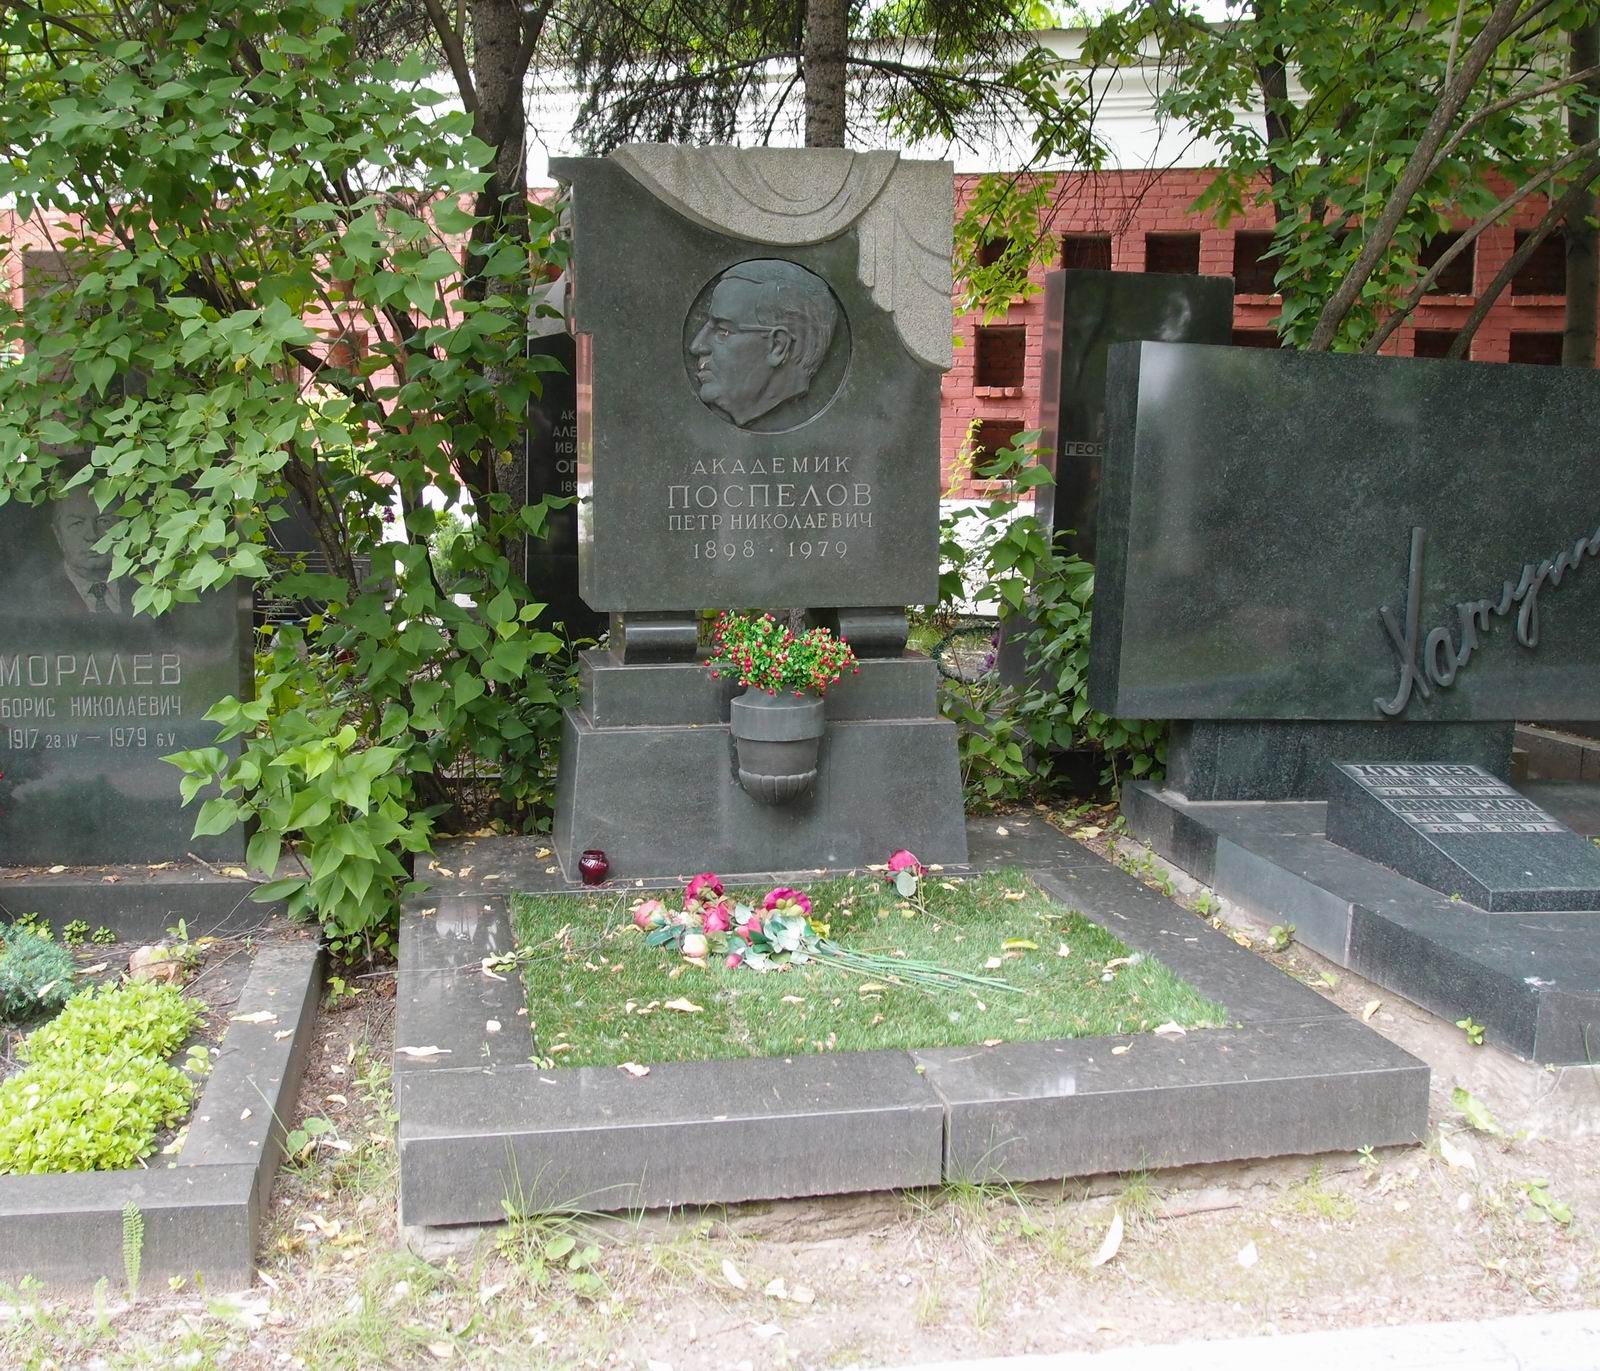 Памятник на могиле Поспелова П.Н. (1898-1979), ск. П.Шапиро, на Новодевичьем кладбище (9-5-9).